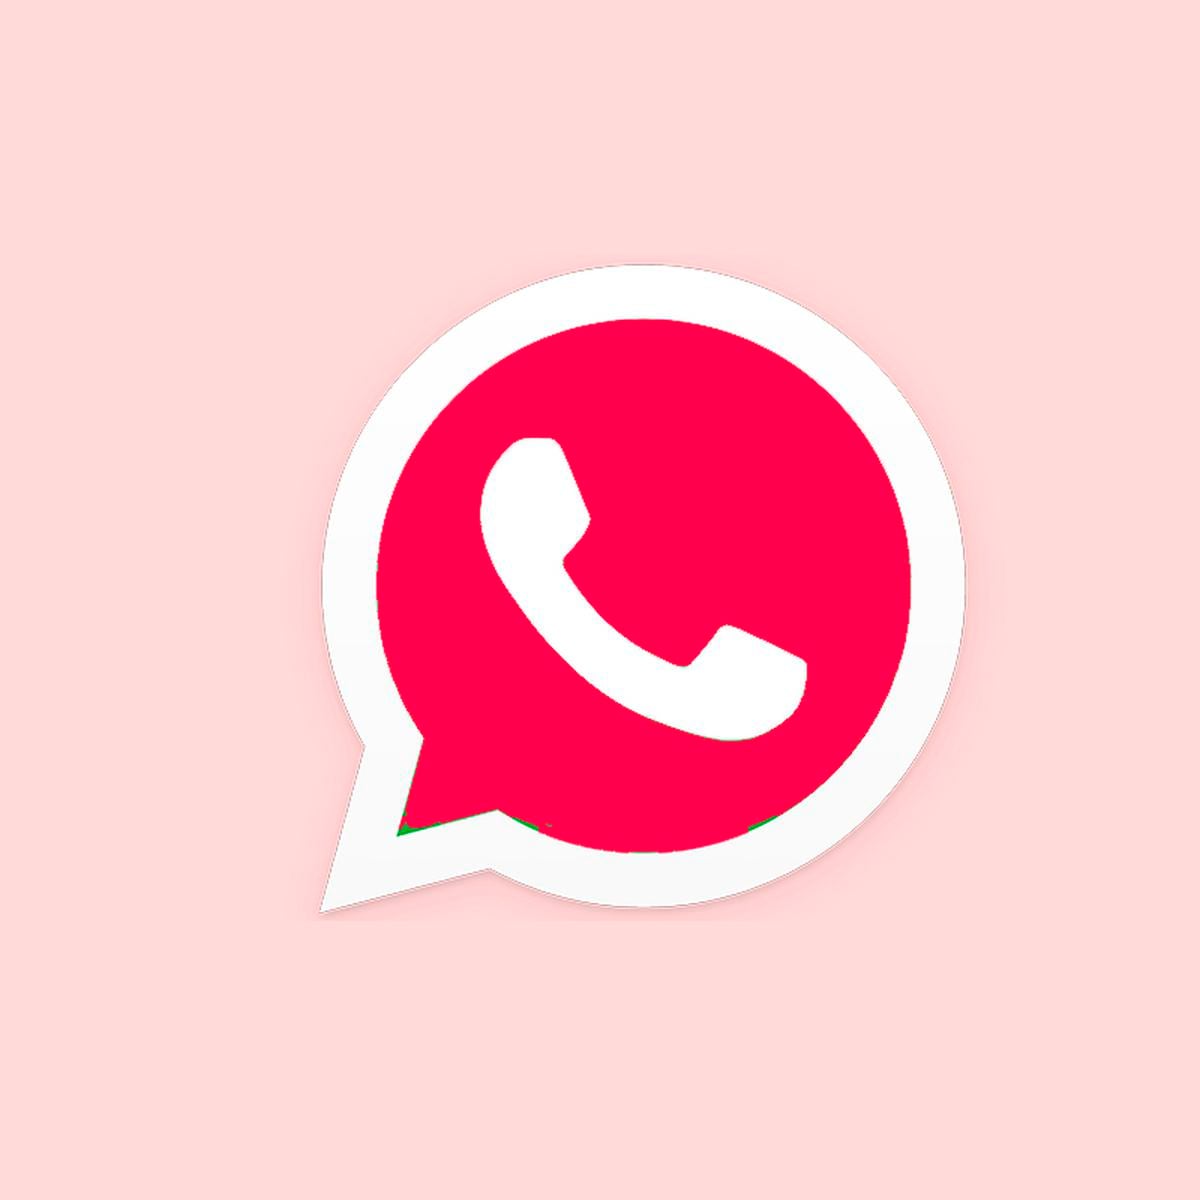 Descarga APK de WhatsApp Plus Rojo: aquí la última versión, enero 2023 |  DEPOR-PLAY | DEPOR